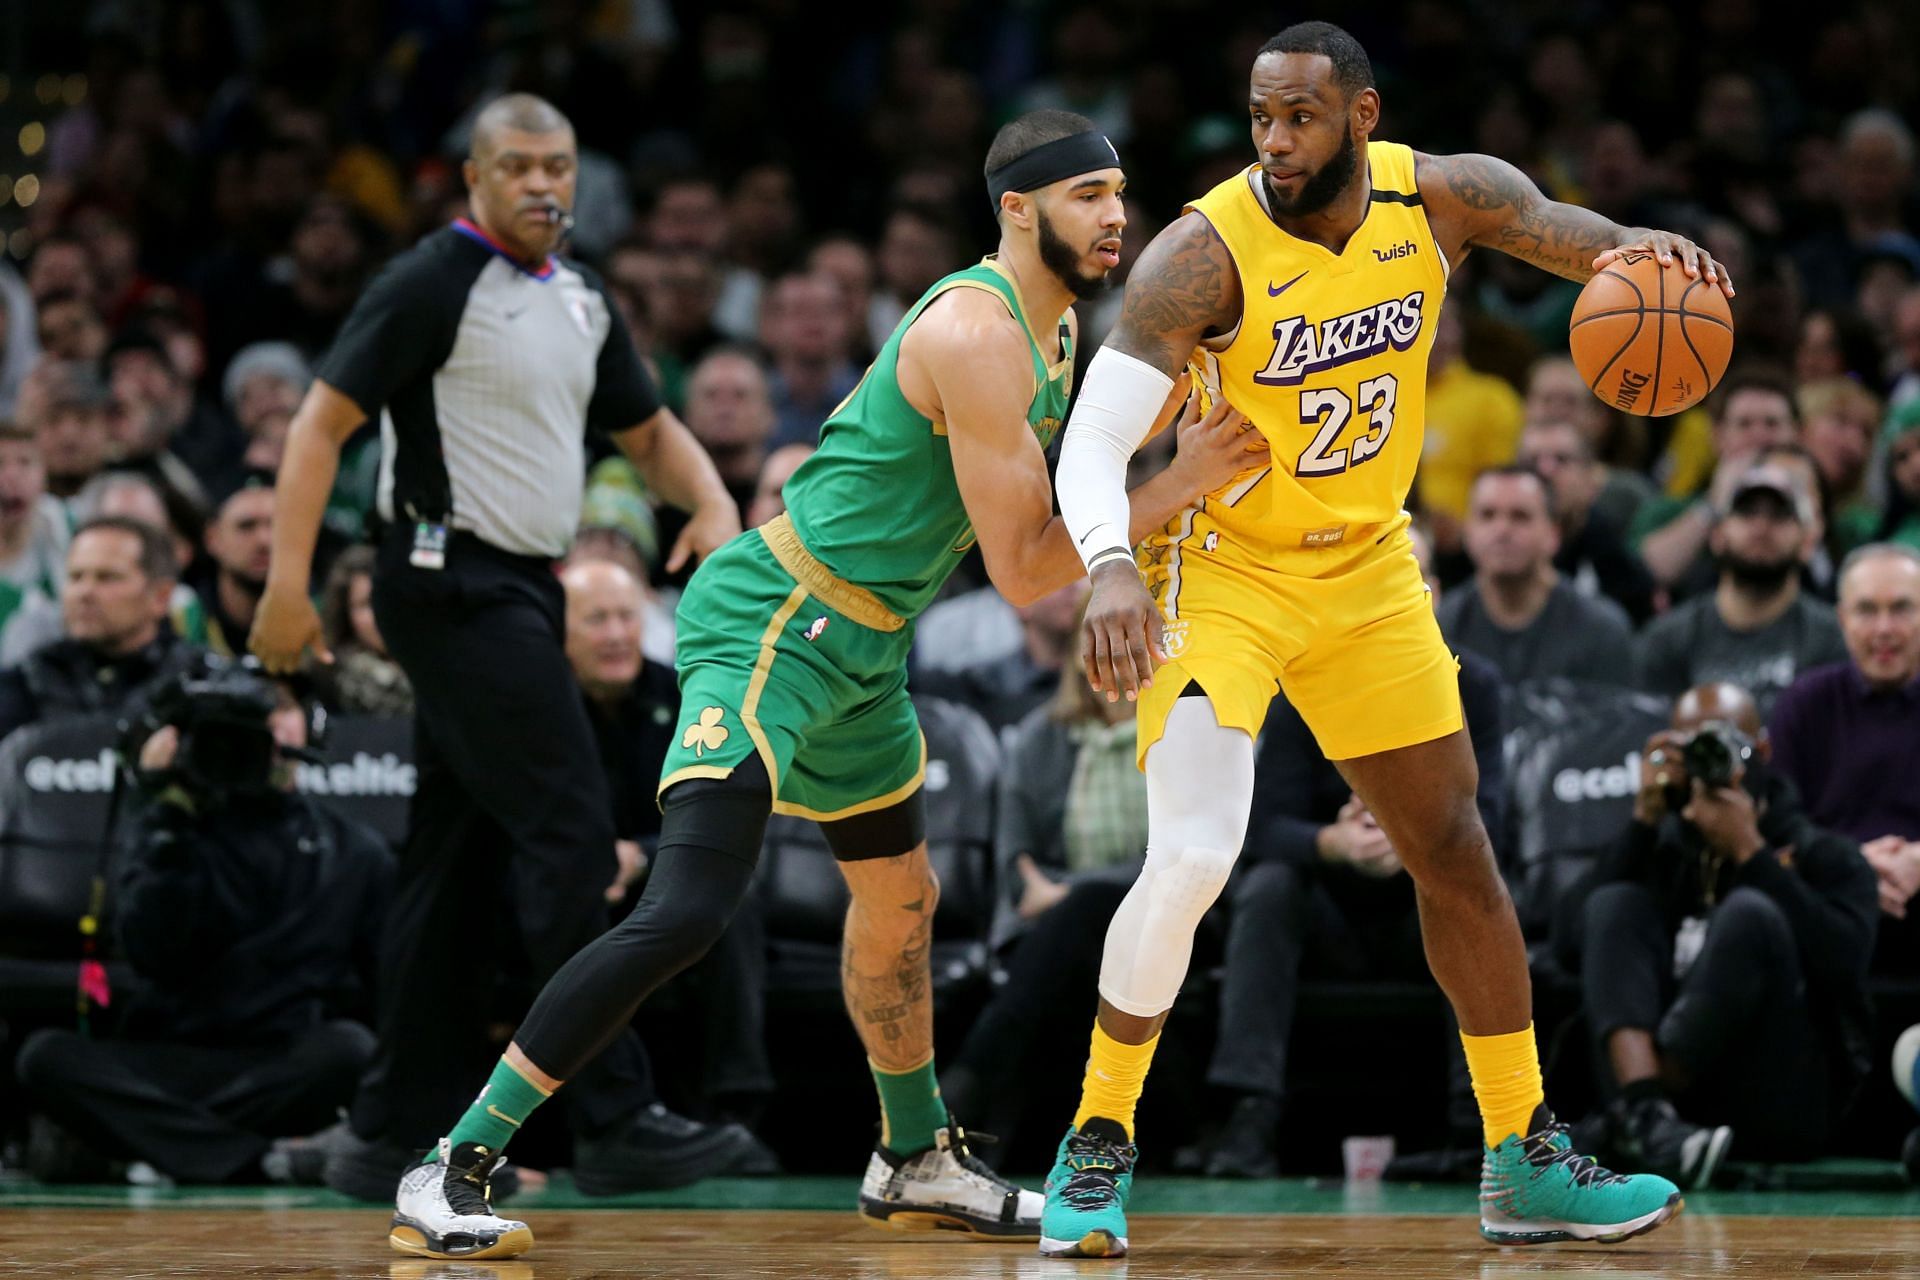 Jayson Tatum (left) of the Boston Celtics guarding LeBron James of the LA Lakers